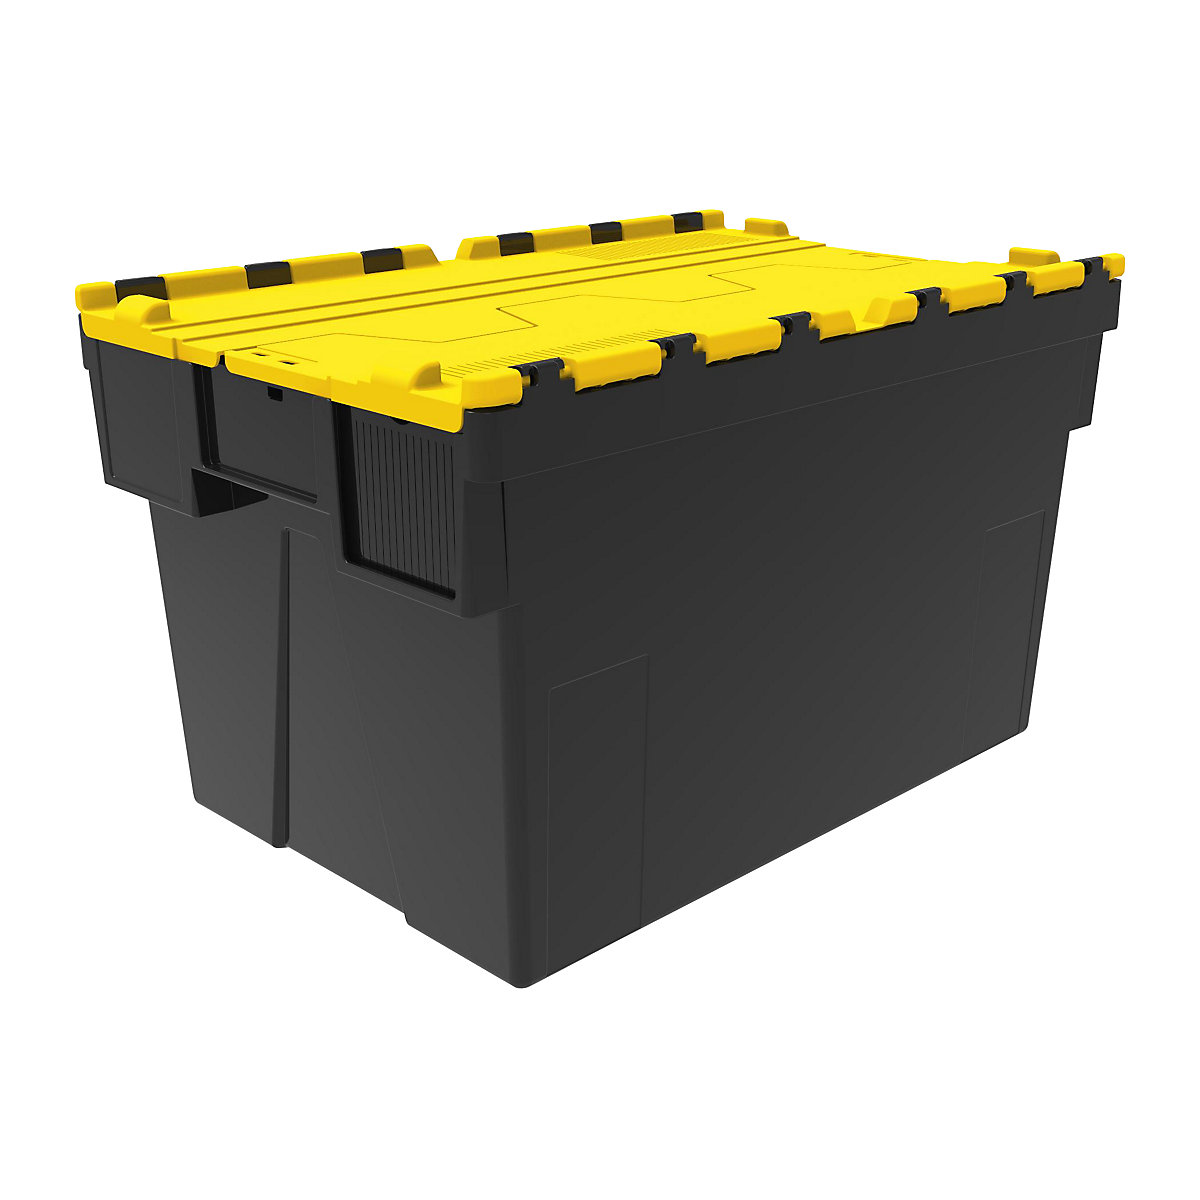 Többször használható rakásolható tároló, h x szé x ma 600 x 400 x 365 mm, cs. e. 5 db, fekete színben, sárga fedéllel